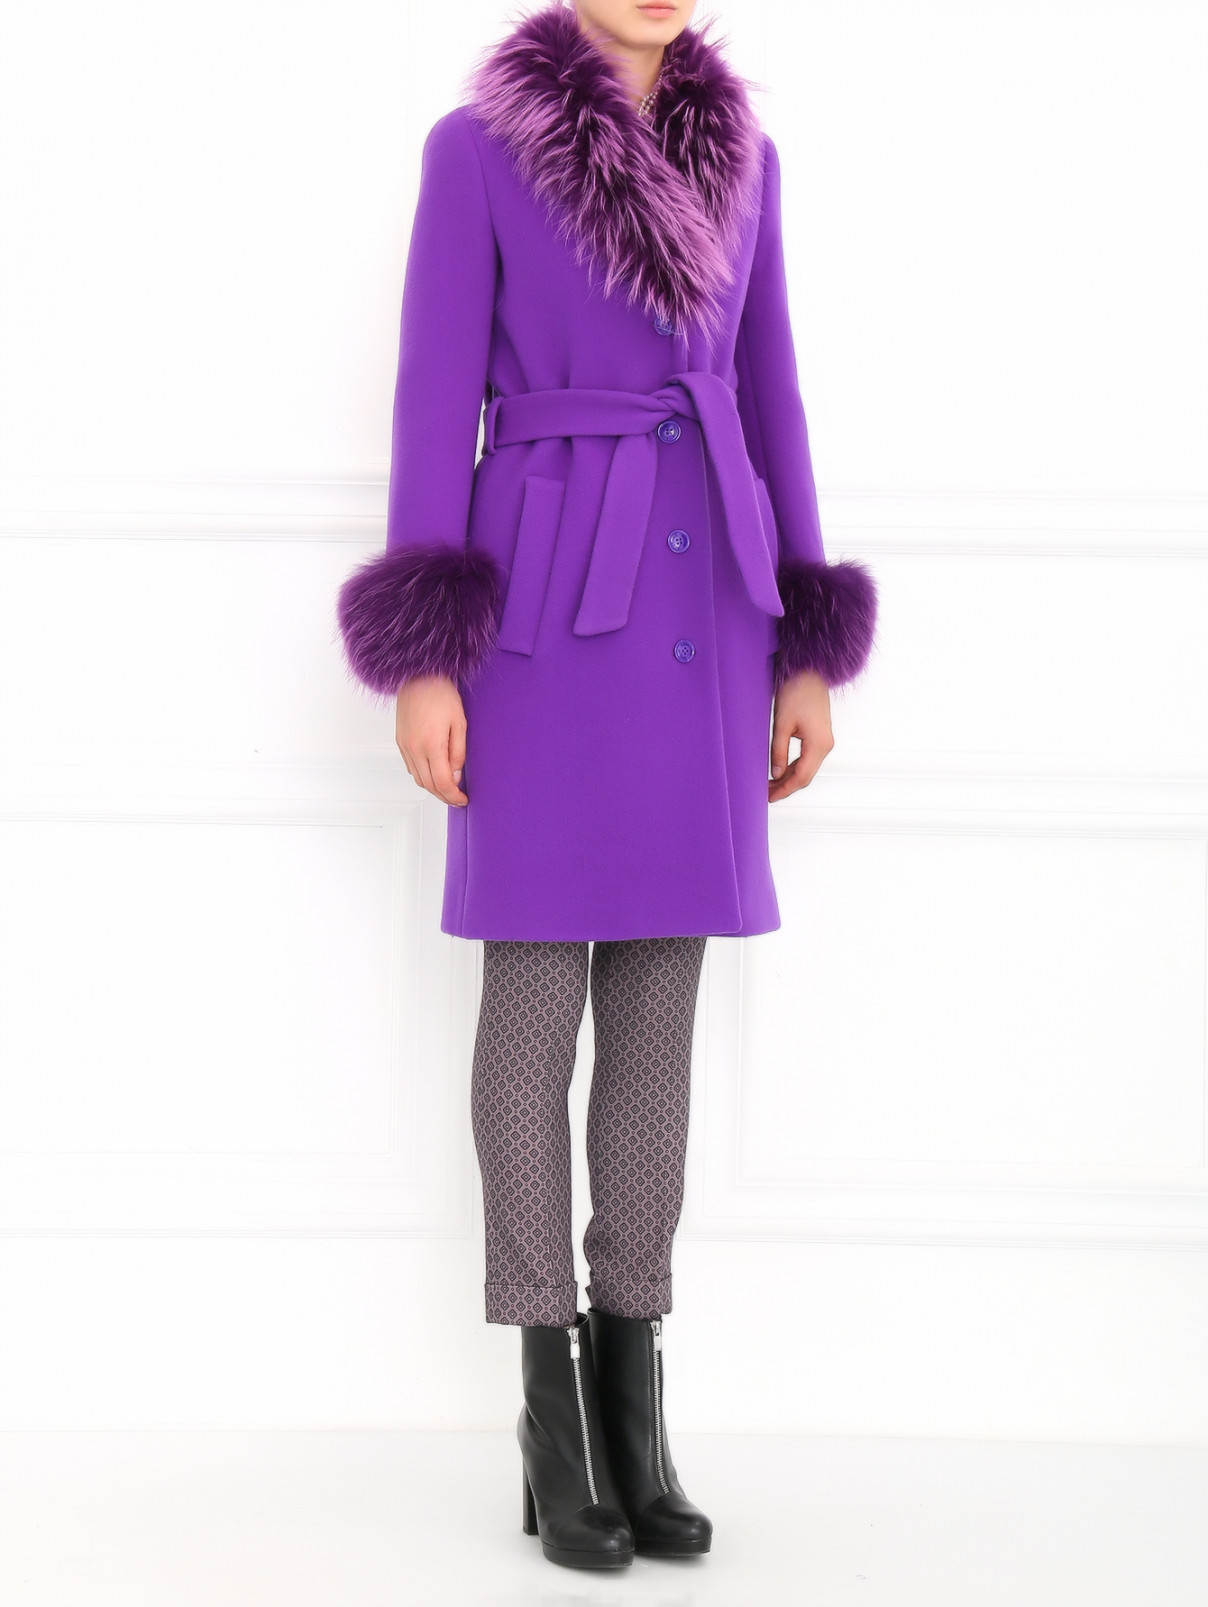 Пальто из шерсти с меховым воротником Moschino Boutique  –  Модель Общий вид  – Цвет:  Фиолетовый